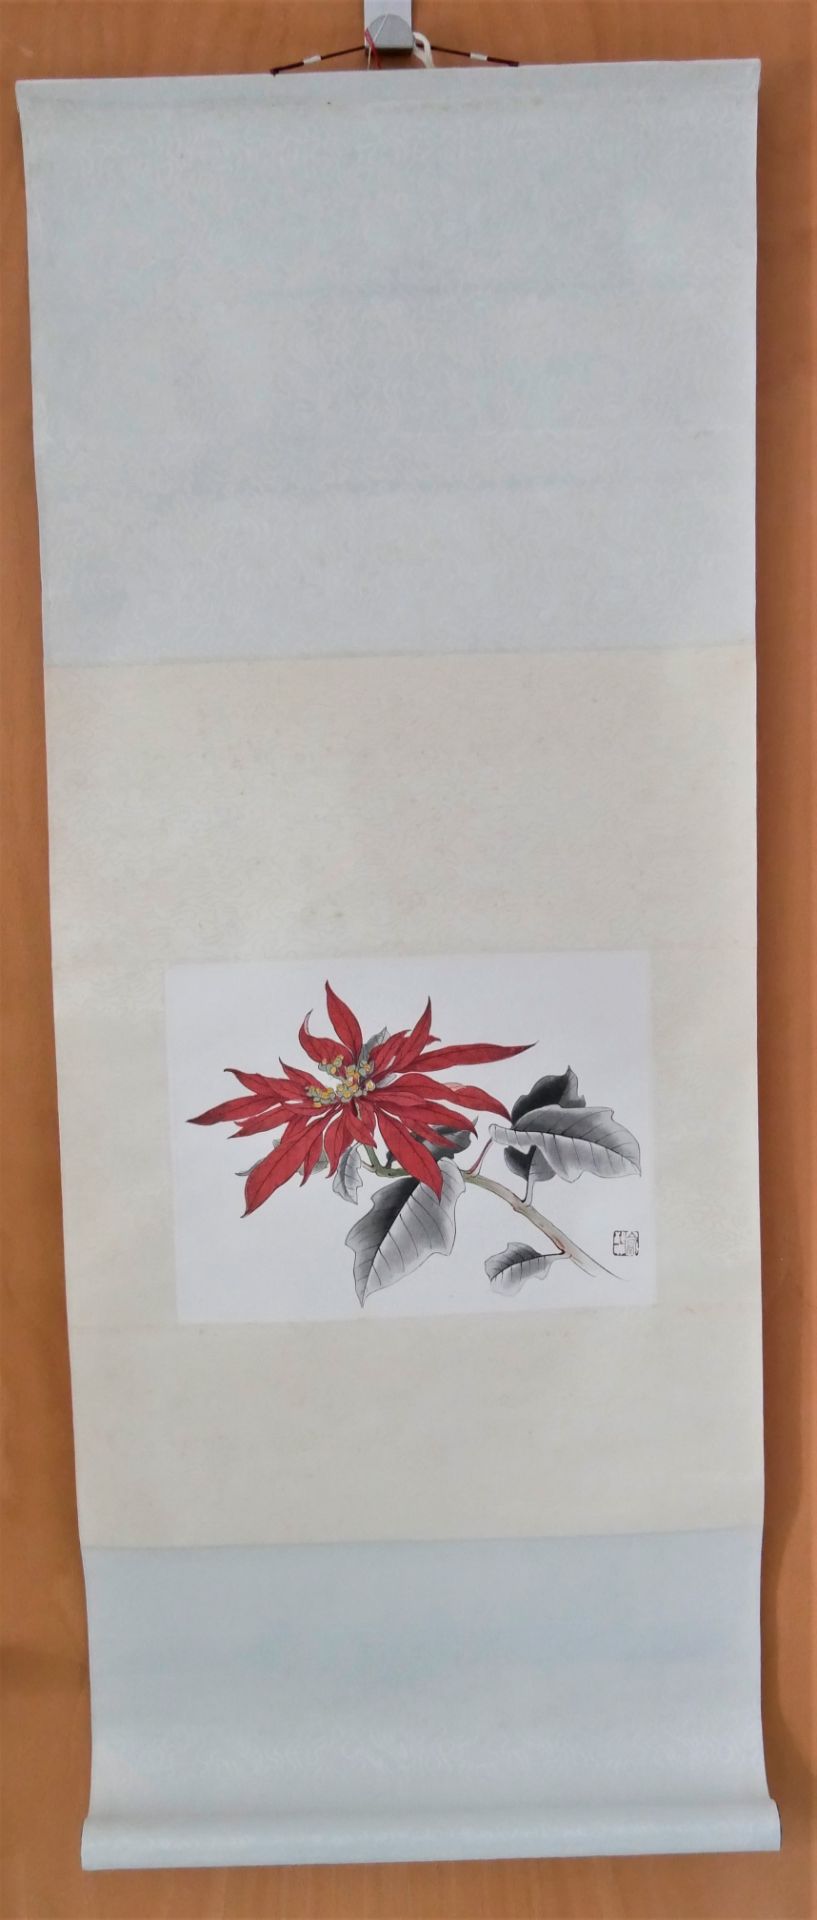 Yu Chih-chen (1965-) - Euphorbia, Aquarell auf Papier, auf Rolle